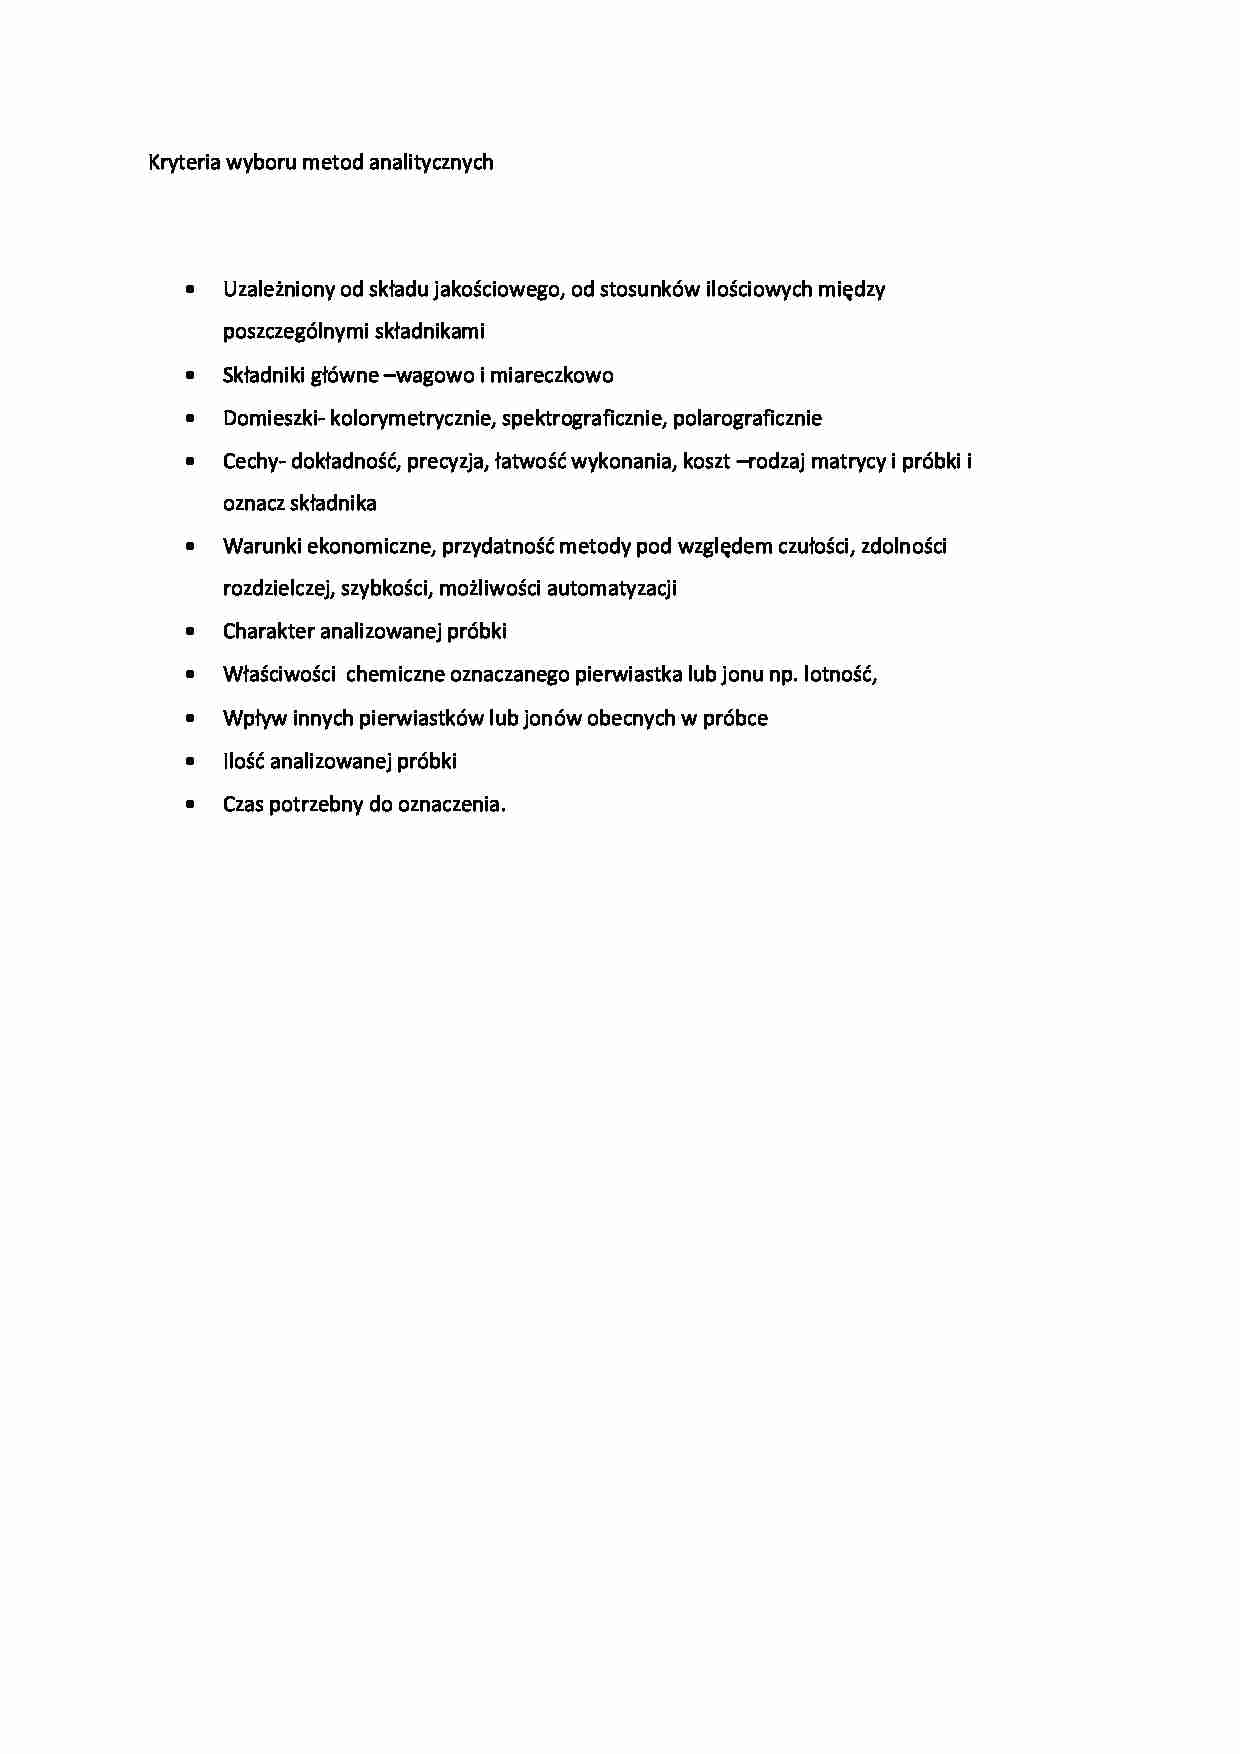 Kryteria wyboru metod analitycznych - wykład - strona 1